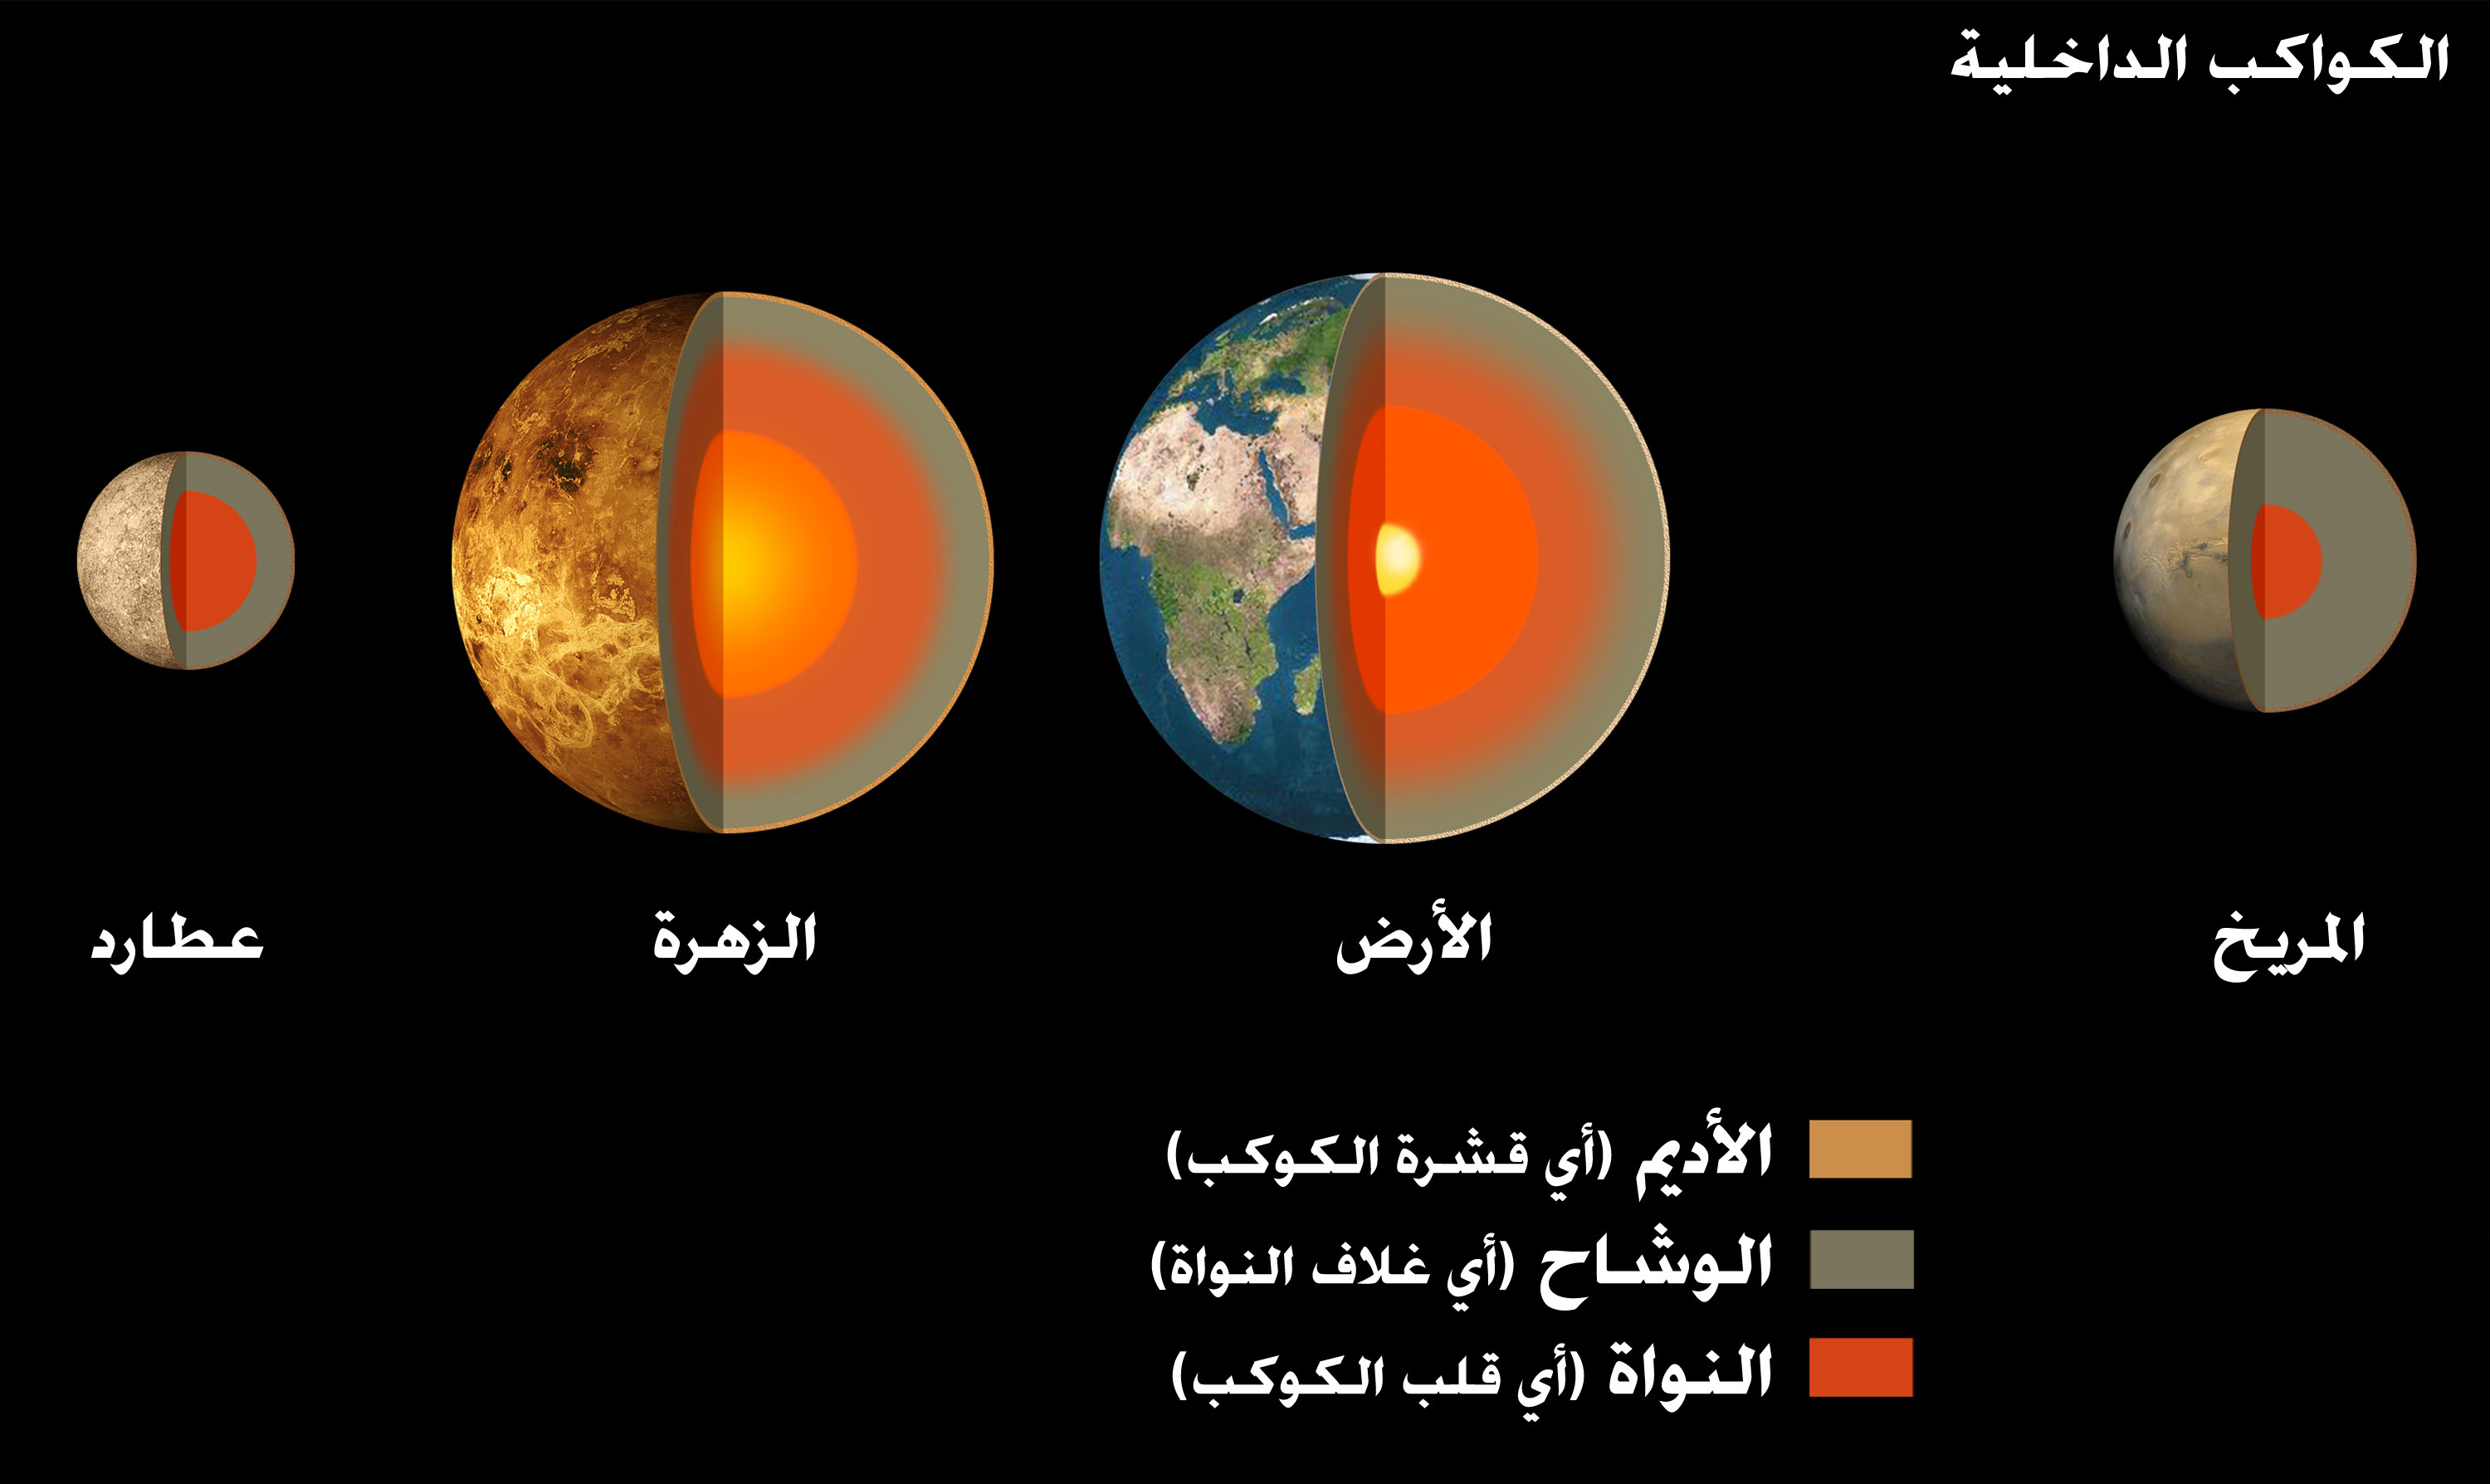 المريخ هو أكبر الكواكب